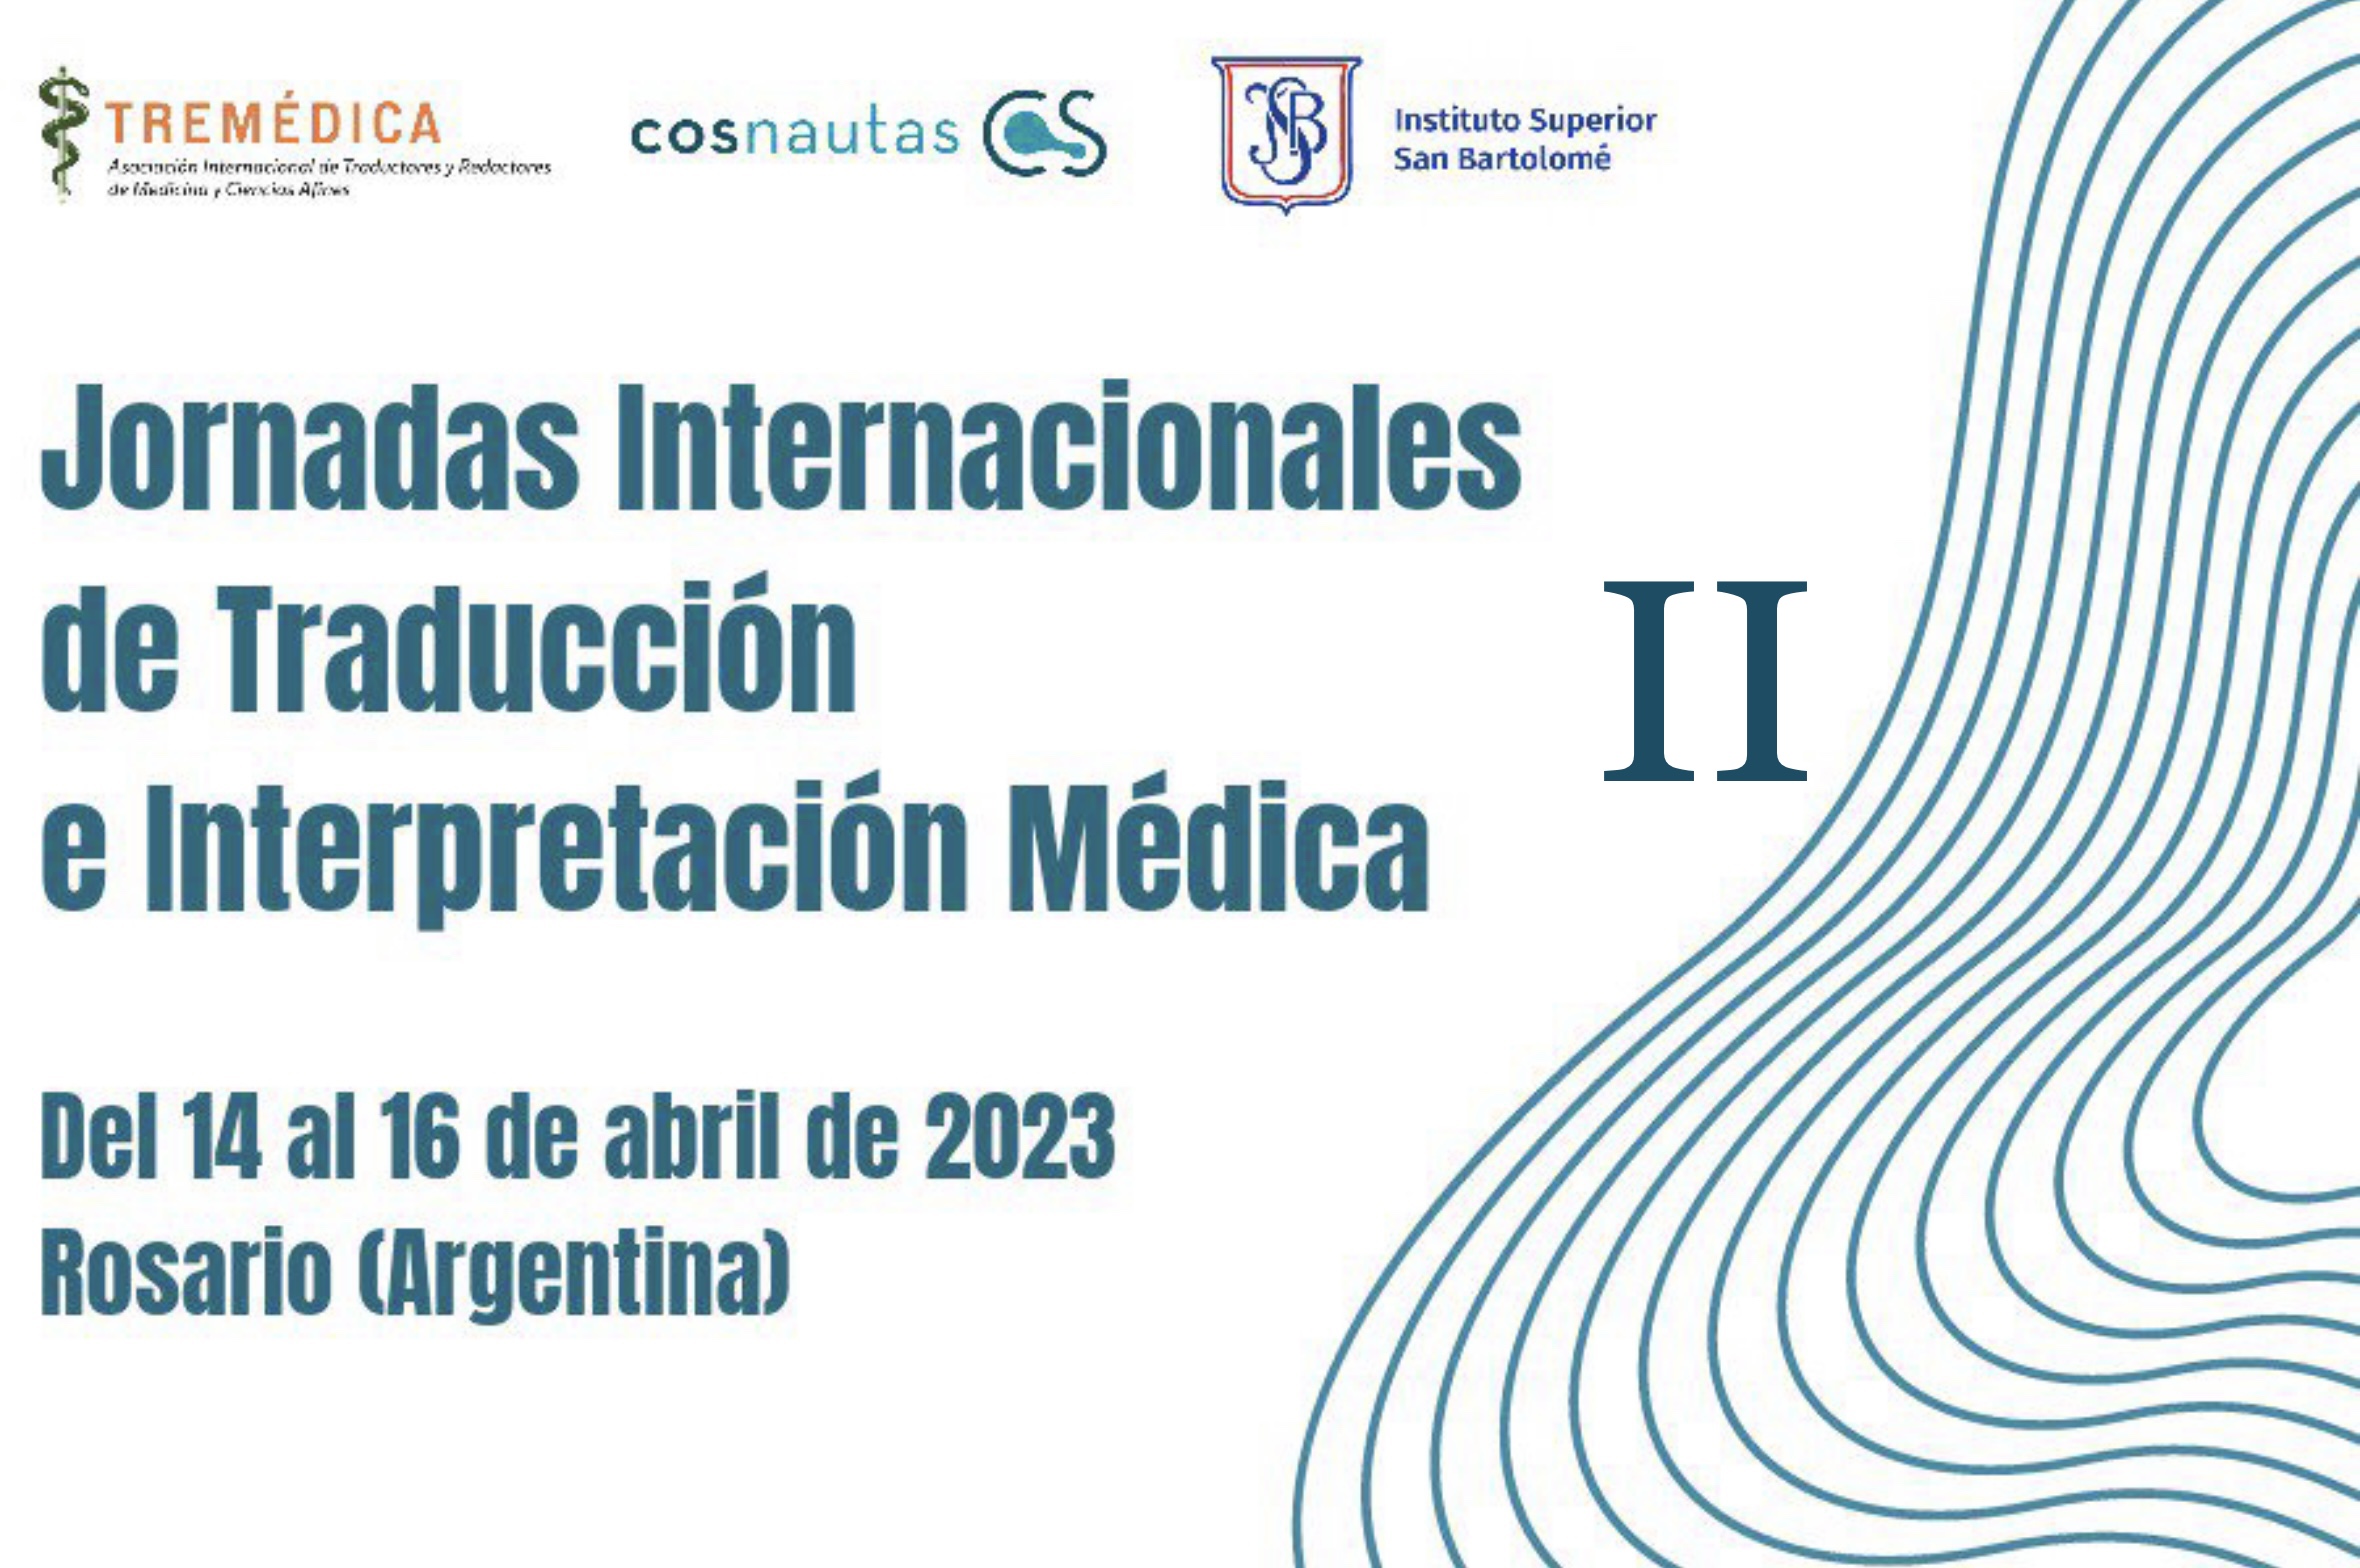 Cartel anunciador de las Jornadas Internacionales de Traducción e Interpretación Médicas de Rosario (Argentina). 